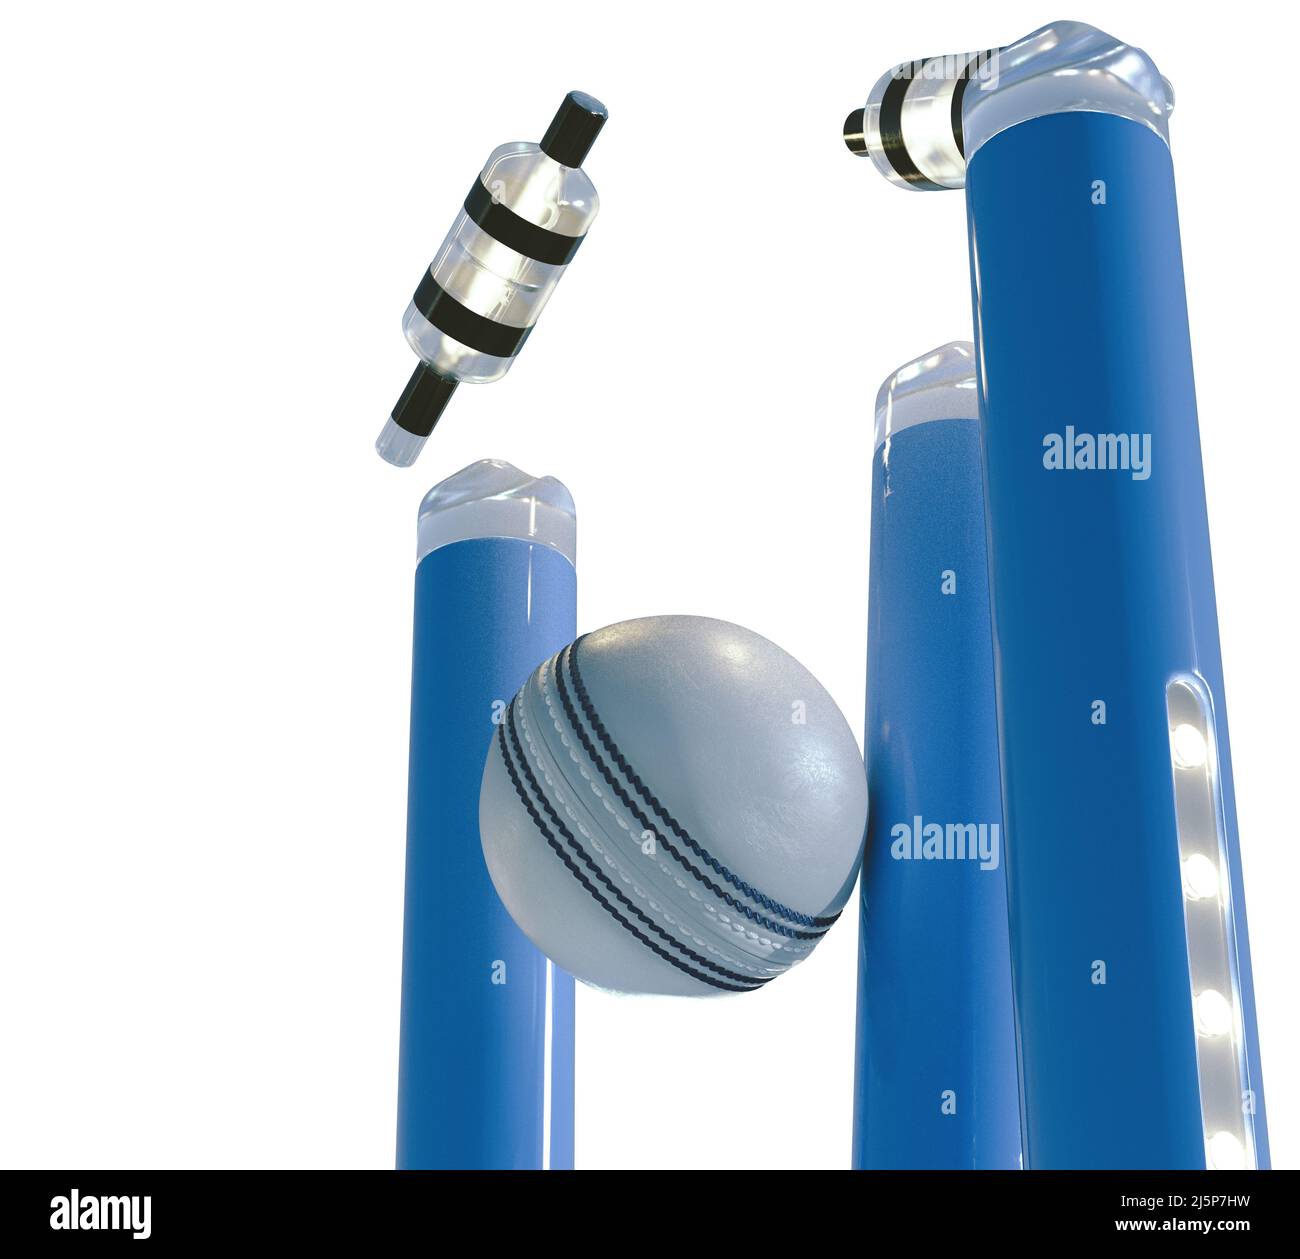 Blaue elektronische Cricket-Wickets mit auslaufenden Bällen und leuchtenden LED-Leuchten auf einem isolierten weißen Hintergrund - 3D Render Stockfoto